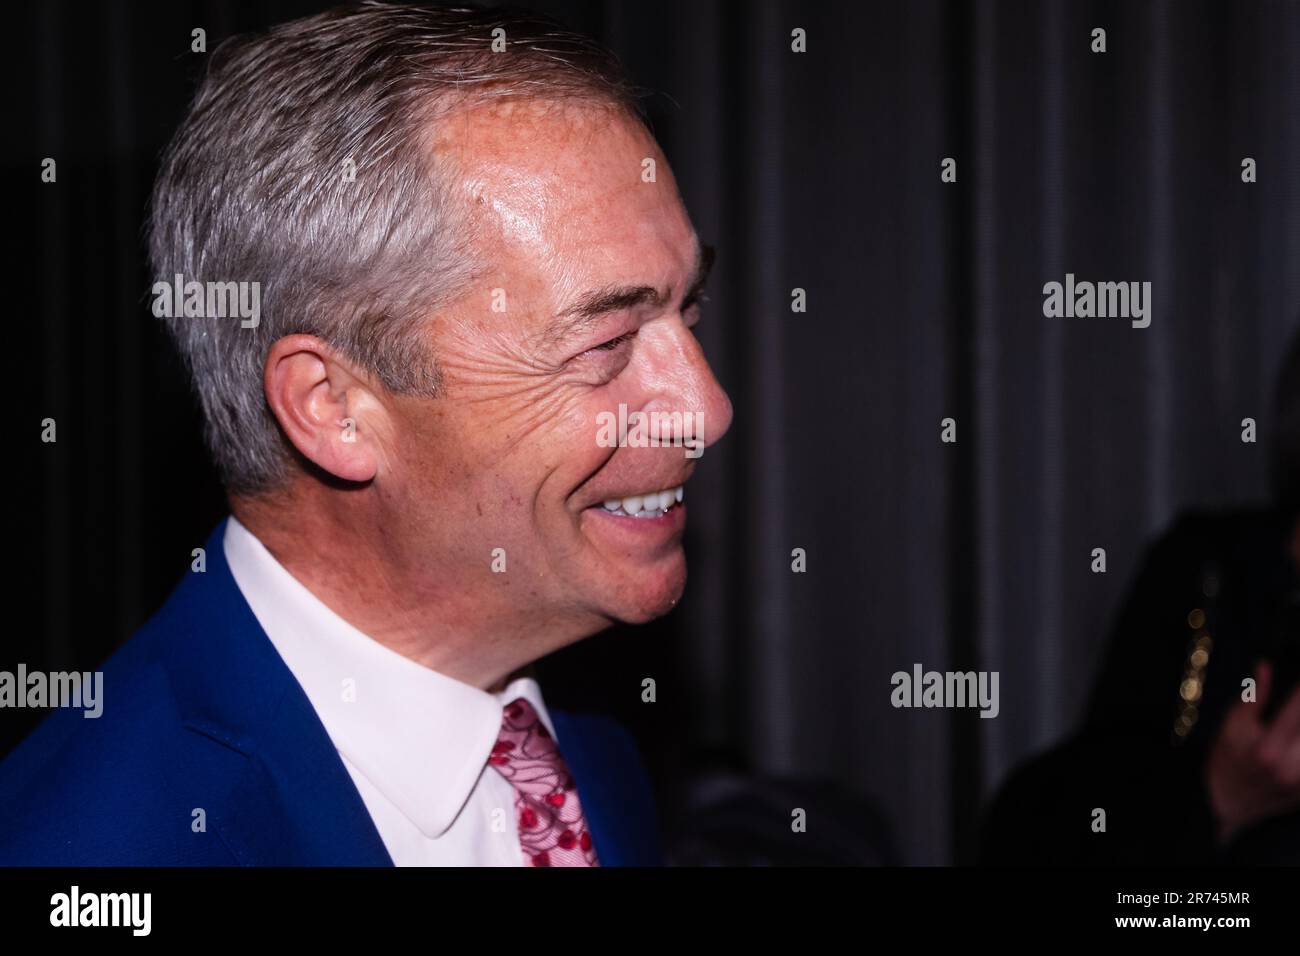 MELBOURNE, AUSTRALIEN - SEPTEMBER 26: Nigel Farage wird am 26. September 2022 mit einem Gast während eines Abends mit Nigel Farage im Melbourne Convention and Exhibition Centre in Melbourne, Australien, gelacht. Stockfoto